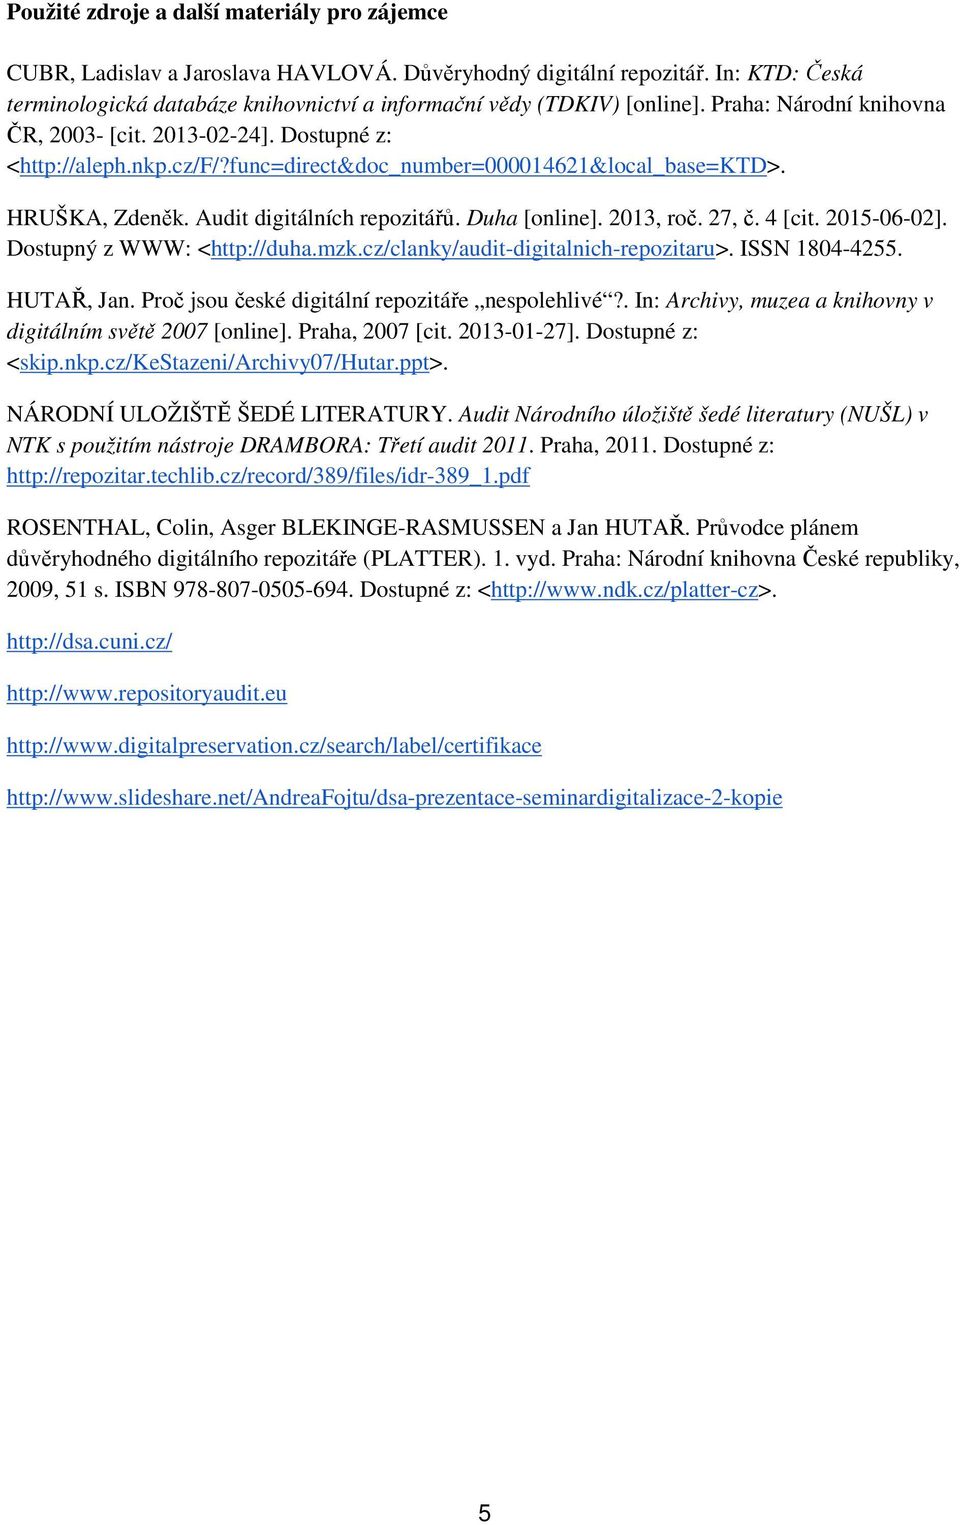 func=direct&doc_number=000014621&local_base=ktd>. HRUŠKA, Zdeněk. Audit digitálních repozitářů. Duha [online]. 2013, roč. 27, č. 4 [cit. 2015-06-02]. Dostupný z WWW: <http://duha.mzk.